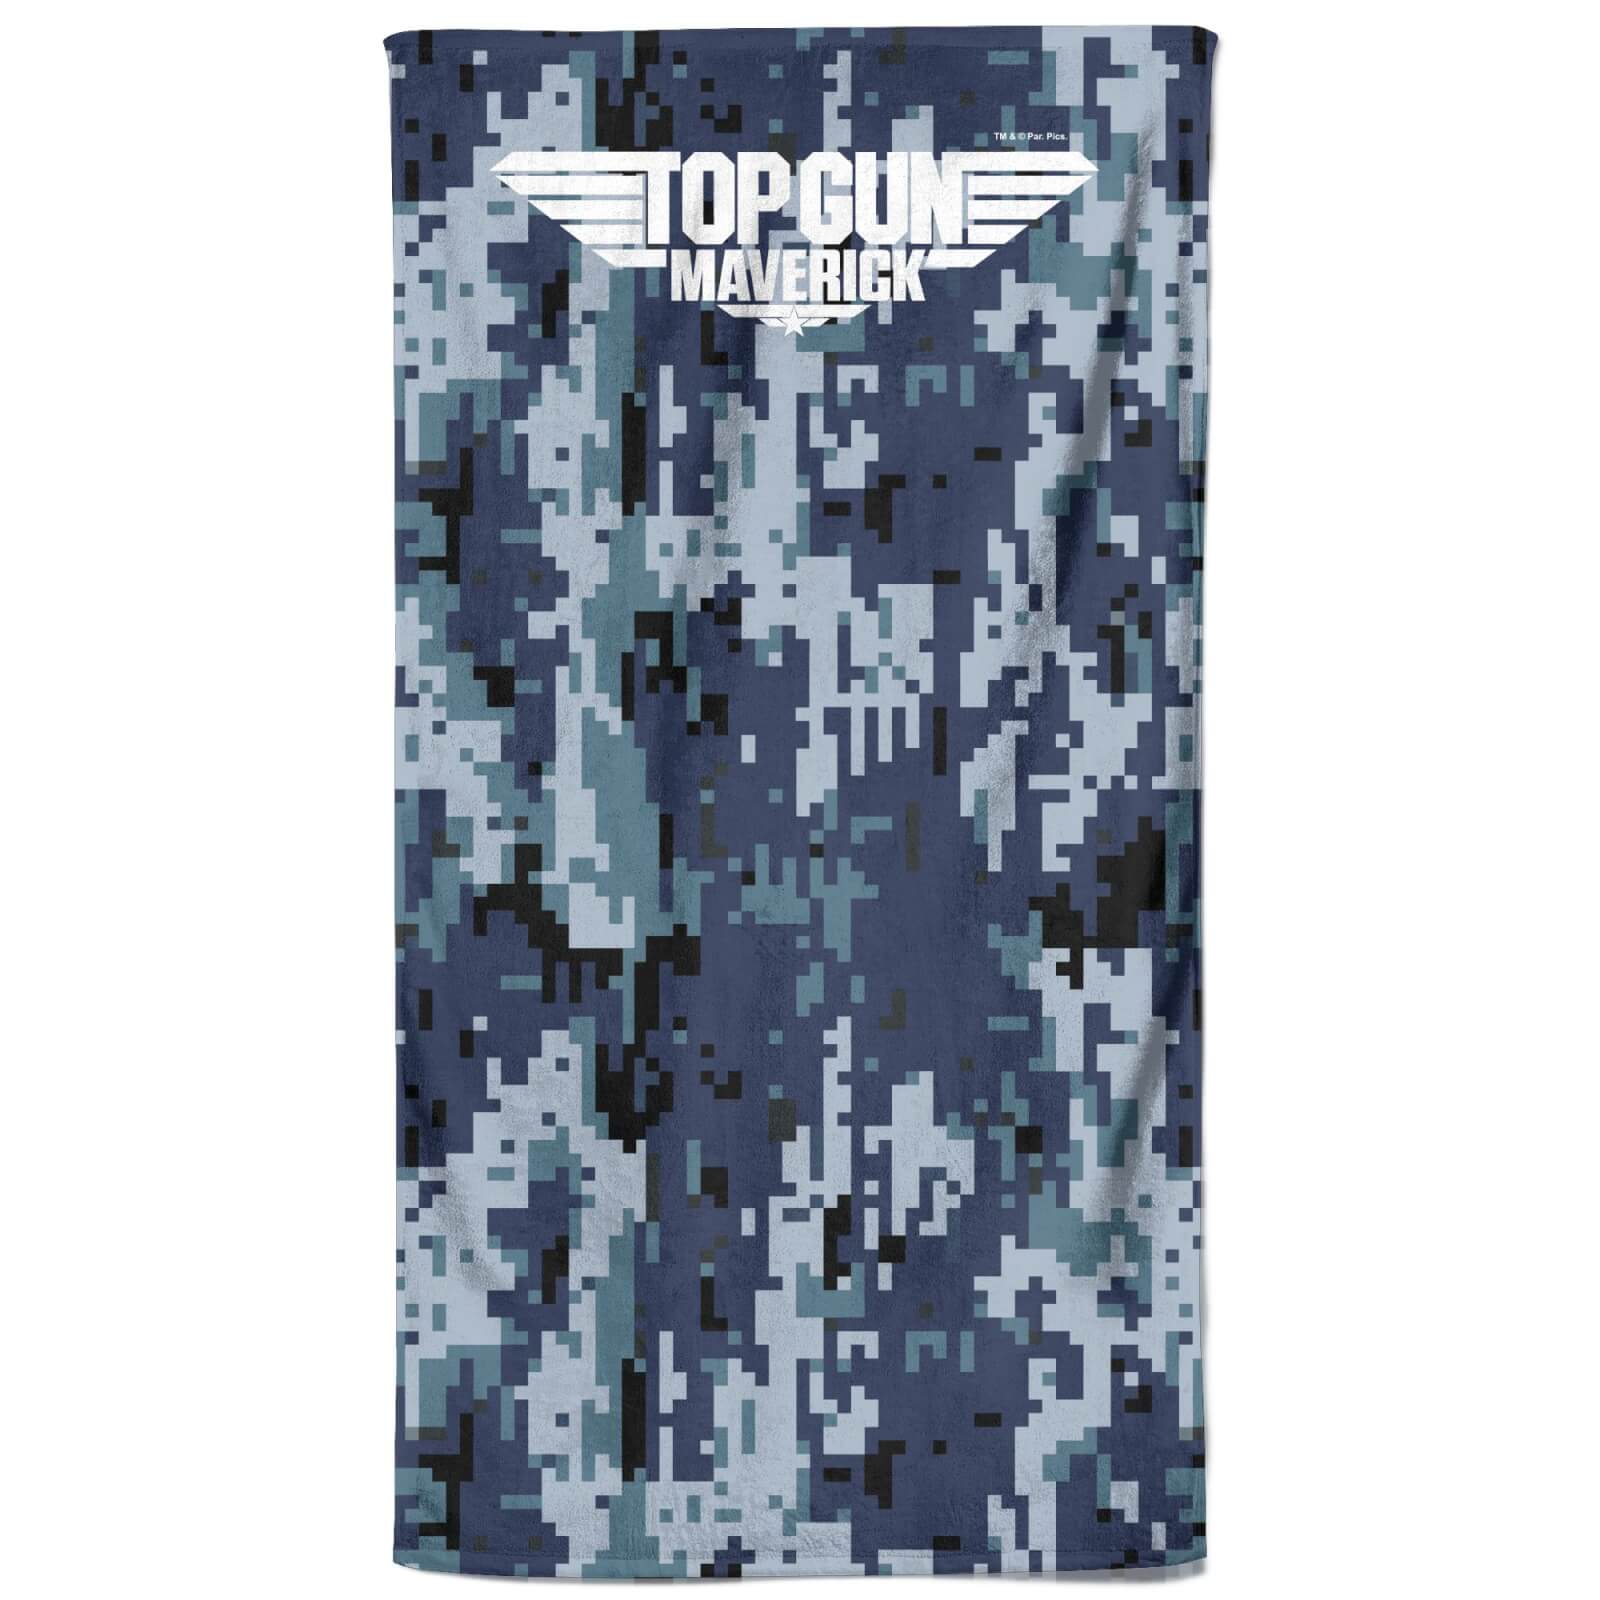 Top Gun Maverick Pixel Camo Beach Towel